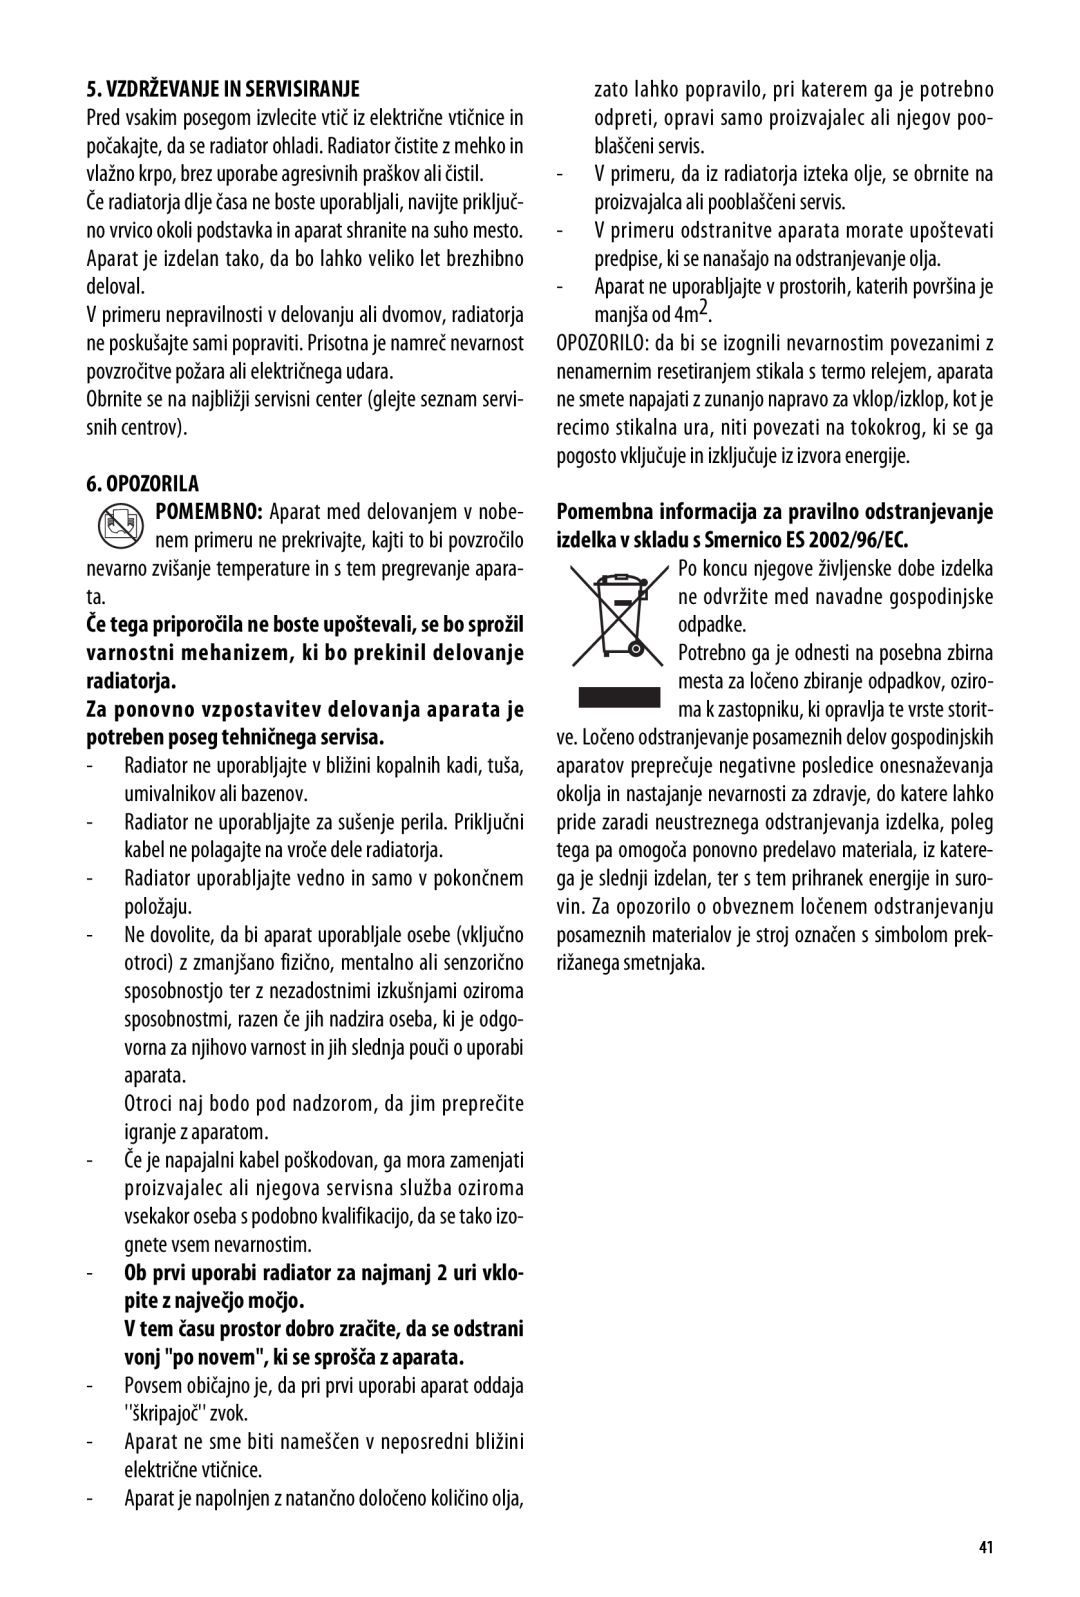 DeLonghi ME 10 manual Vzdrževanje In Servisiranje, Opozorila 